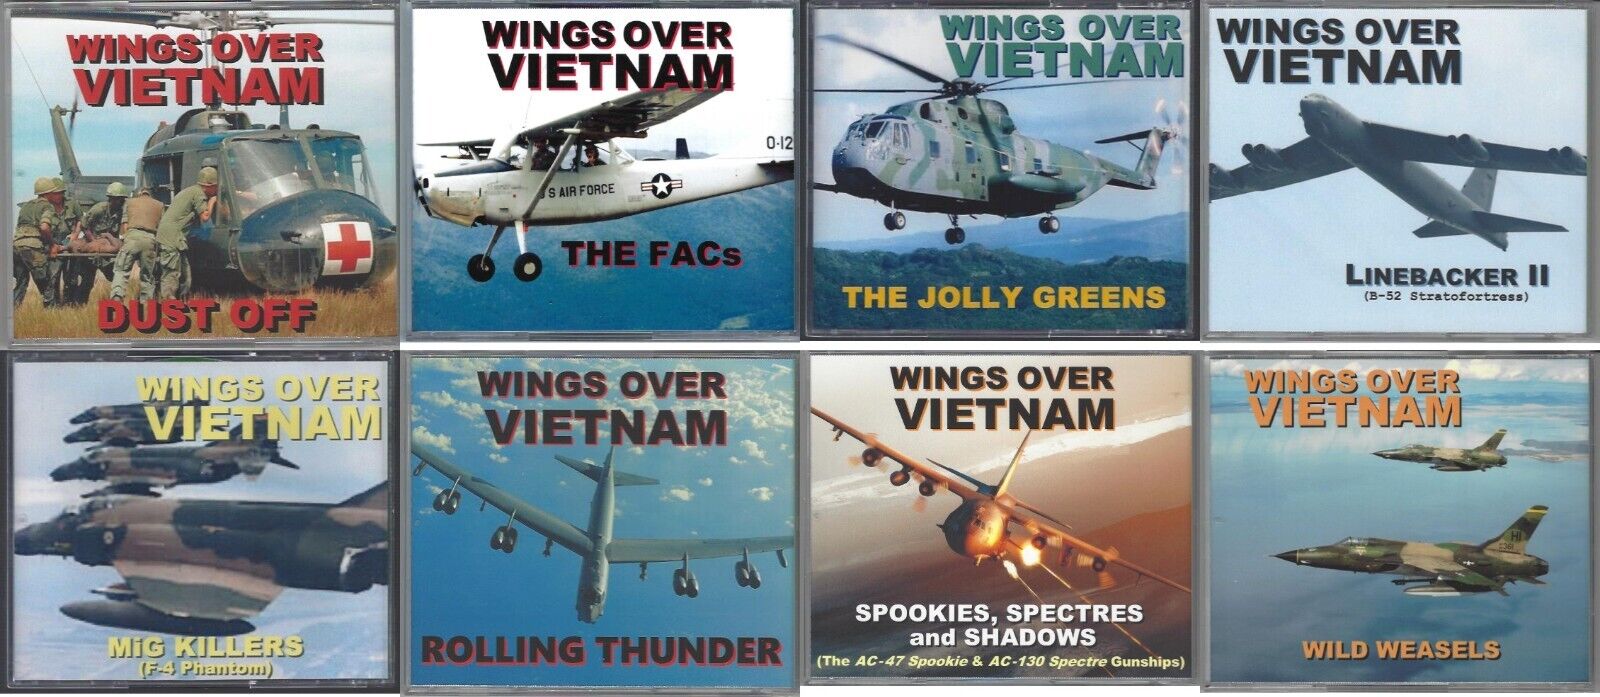 WINGS OVER VIETNAM - OUTSTANDING 8-DVD SET ON VIETNAM WAR (MY OVERALL FAVORITE)